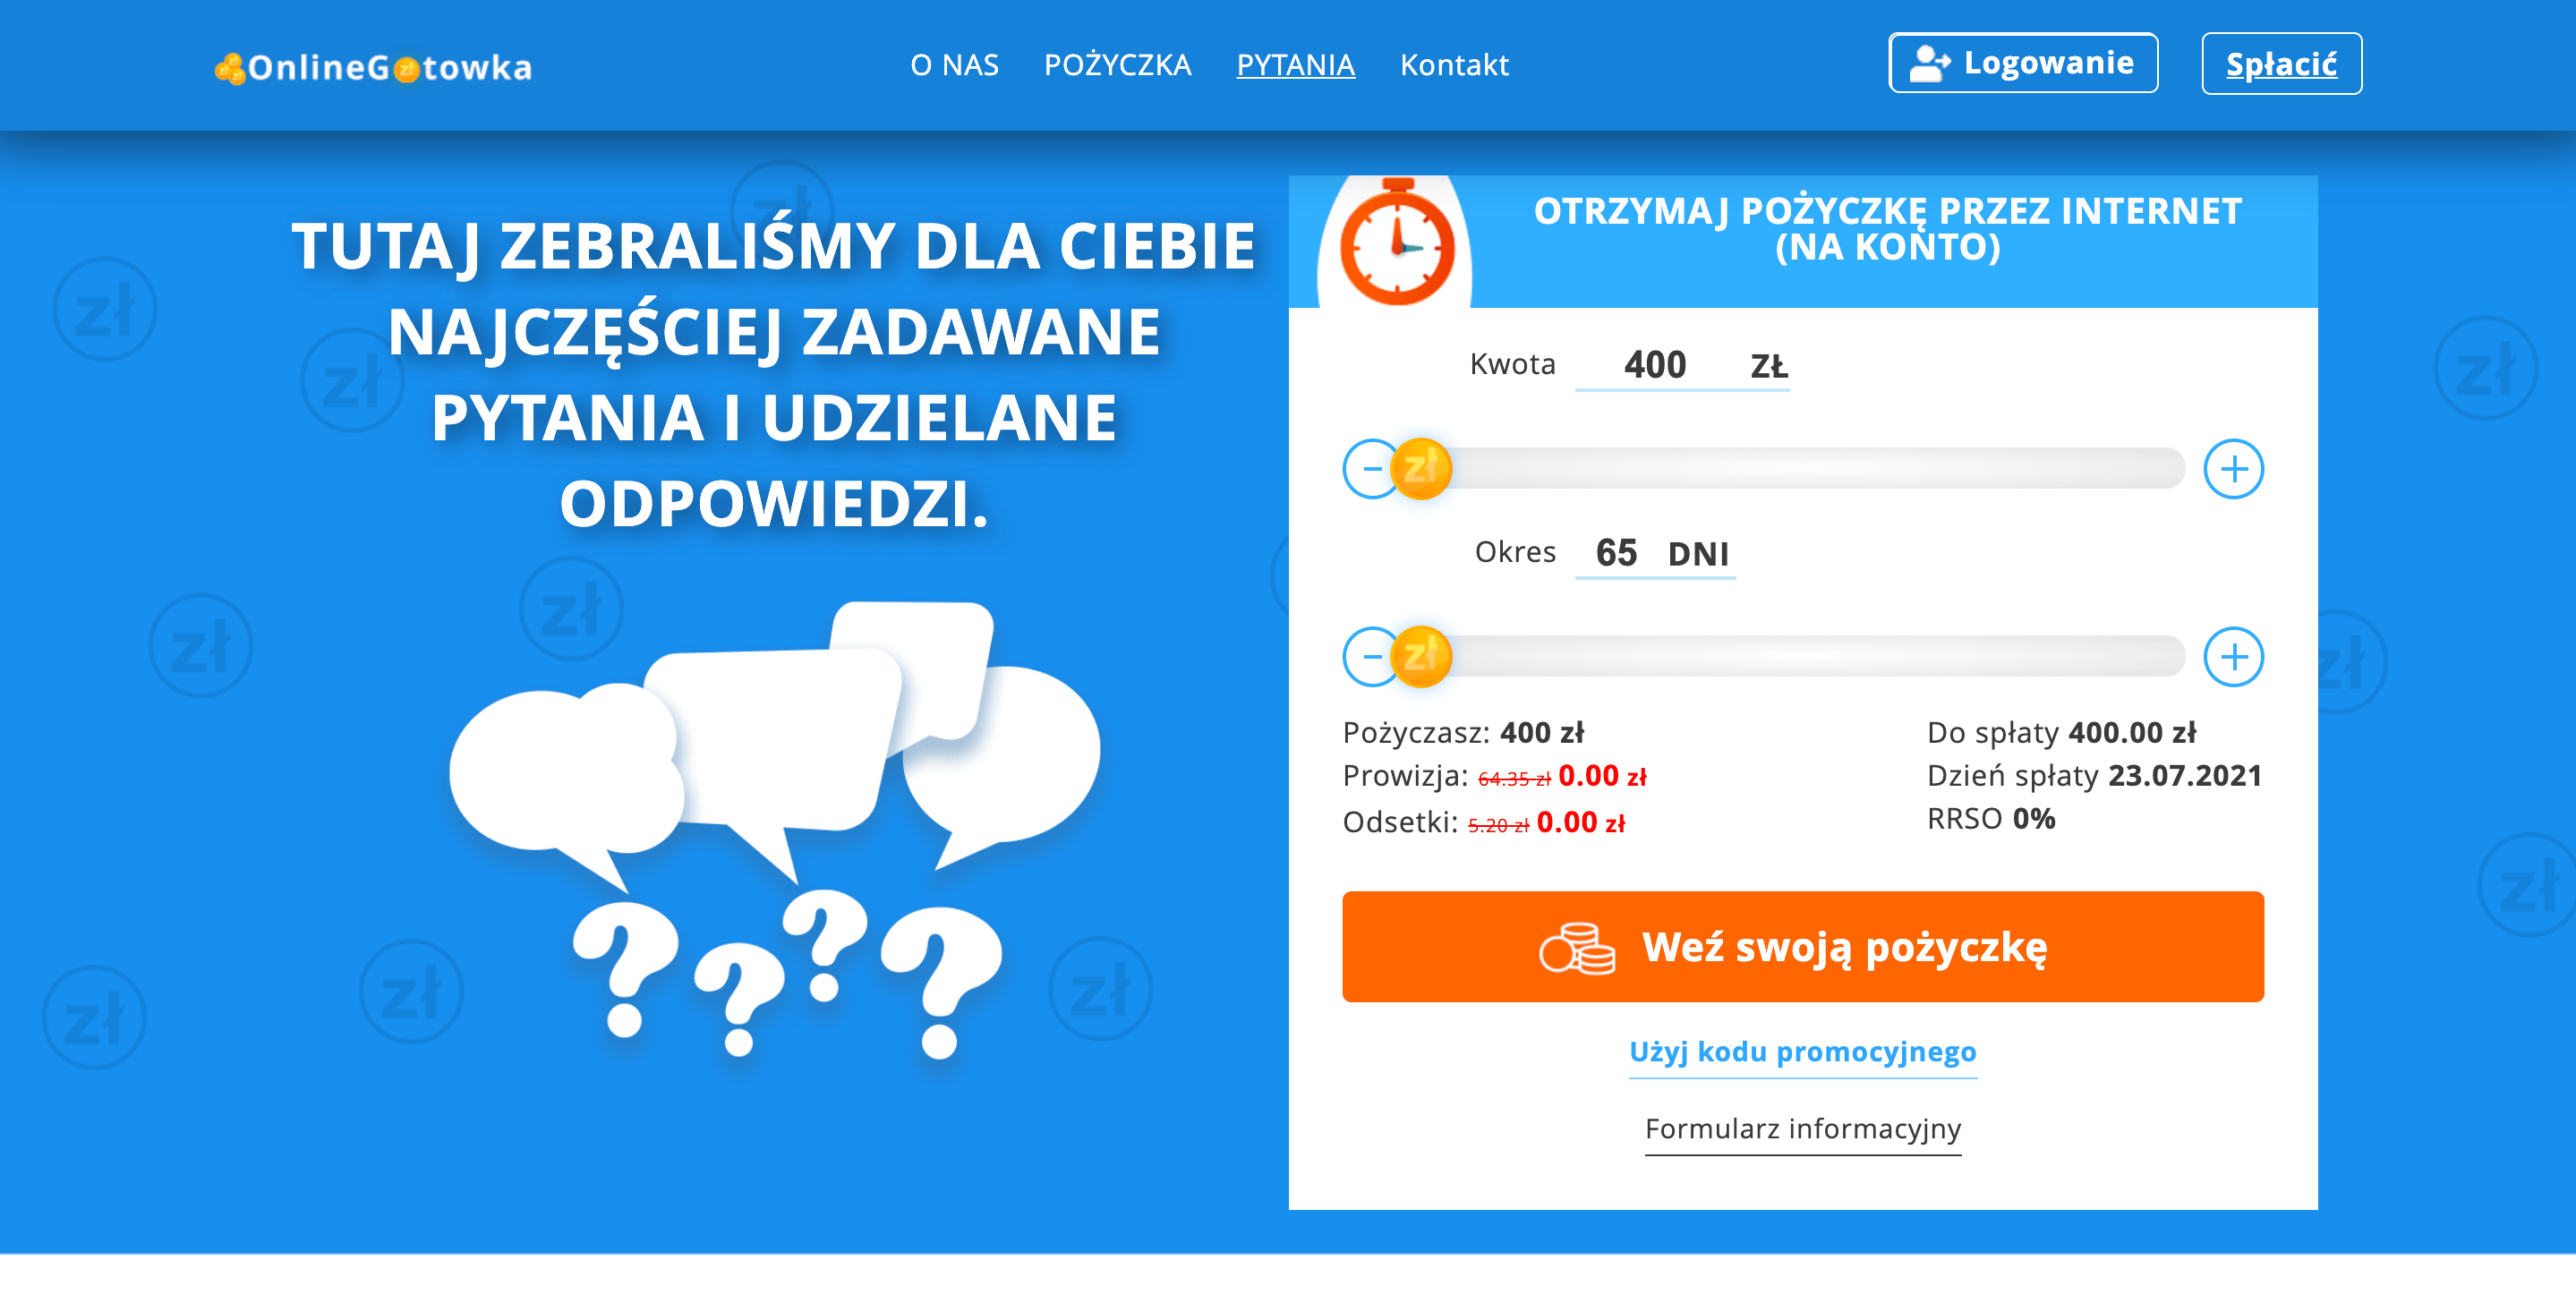 OnlineGotowka - Pożyczki do 15 000 zł.